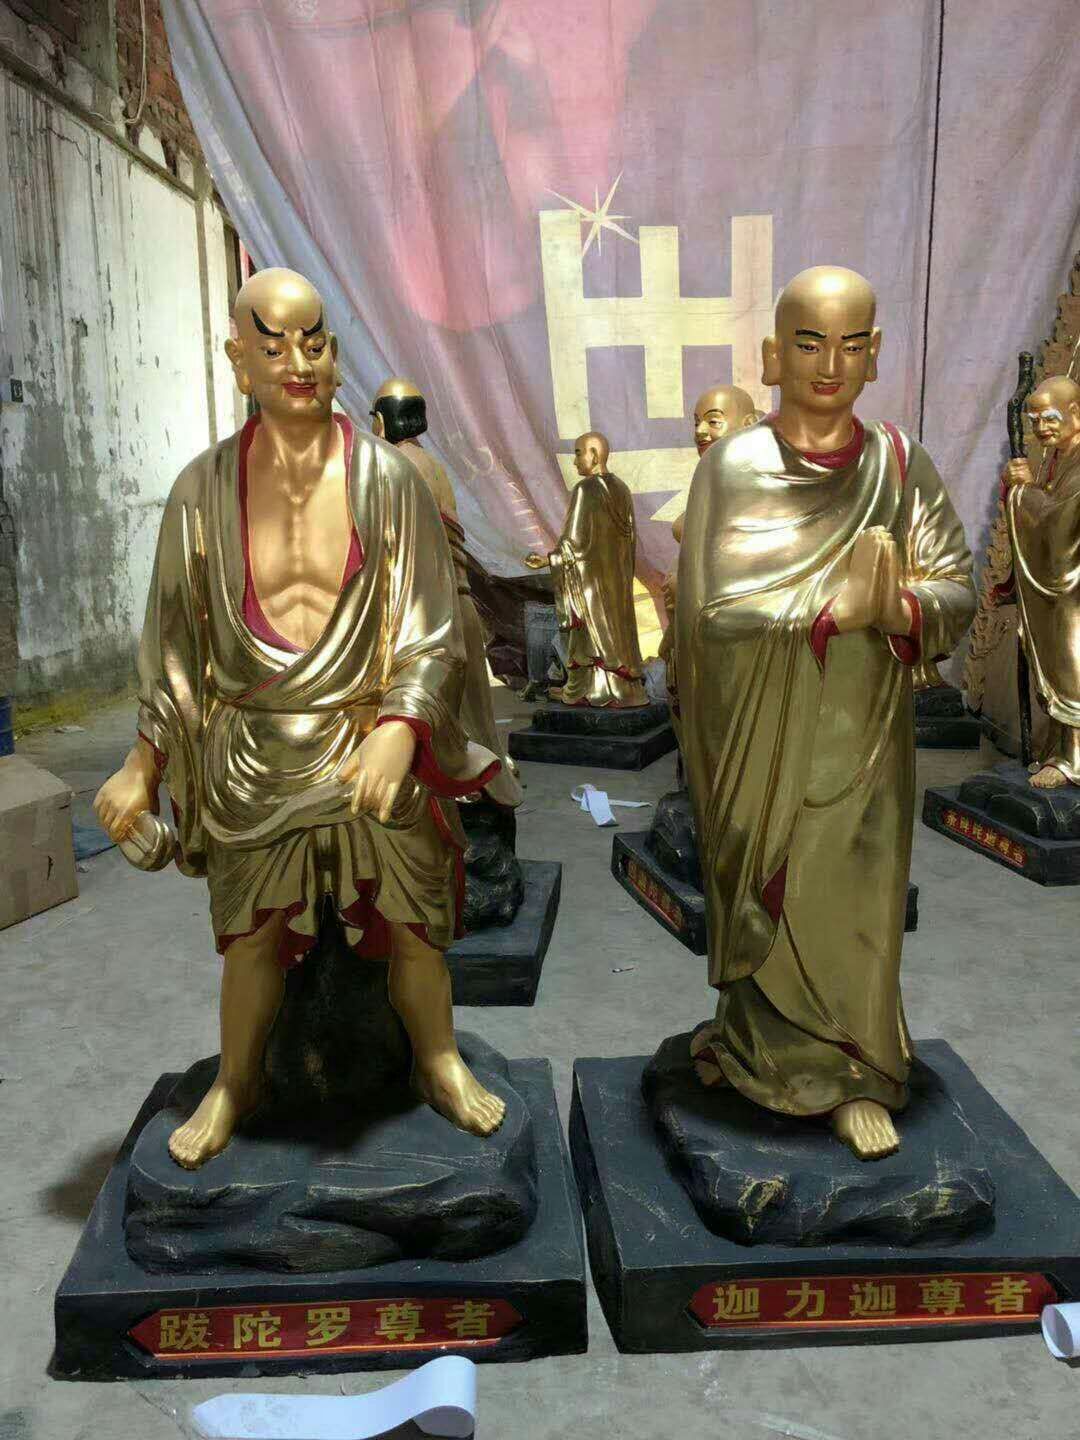 十八罗汉佛像 厂家佛像定做 十八罗汉 寺庙大型佛像 鑫福法器 彩绘十八罗汉 佛像贴金8